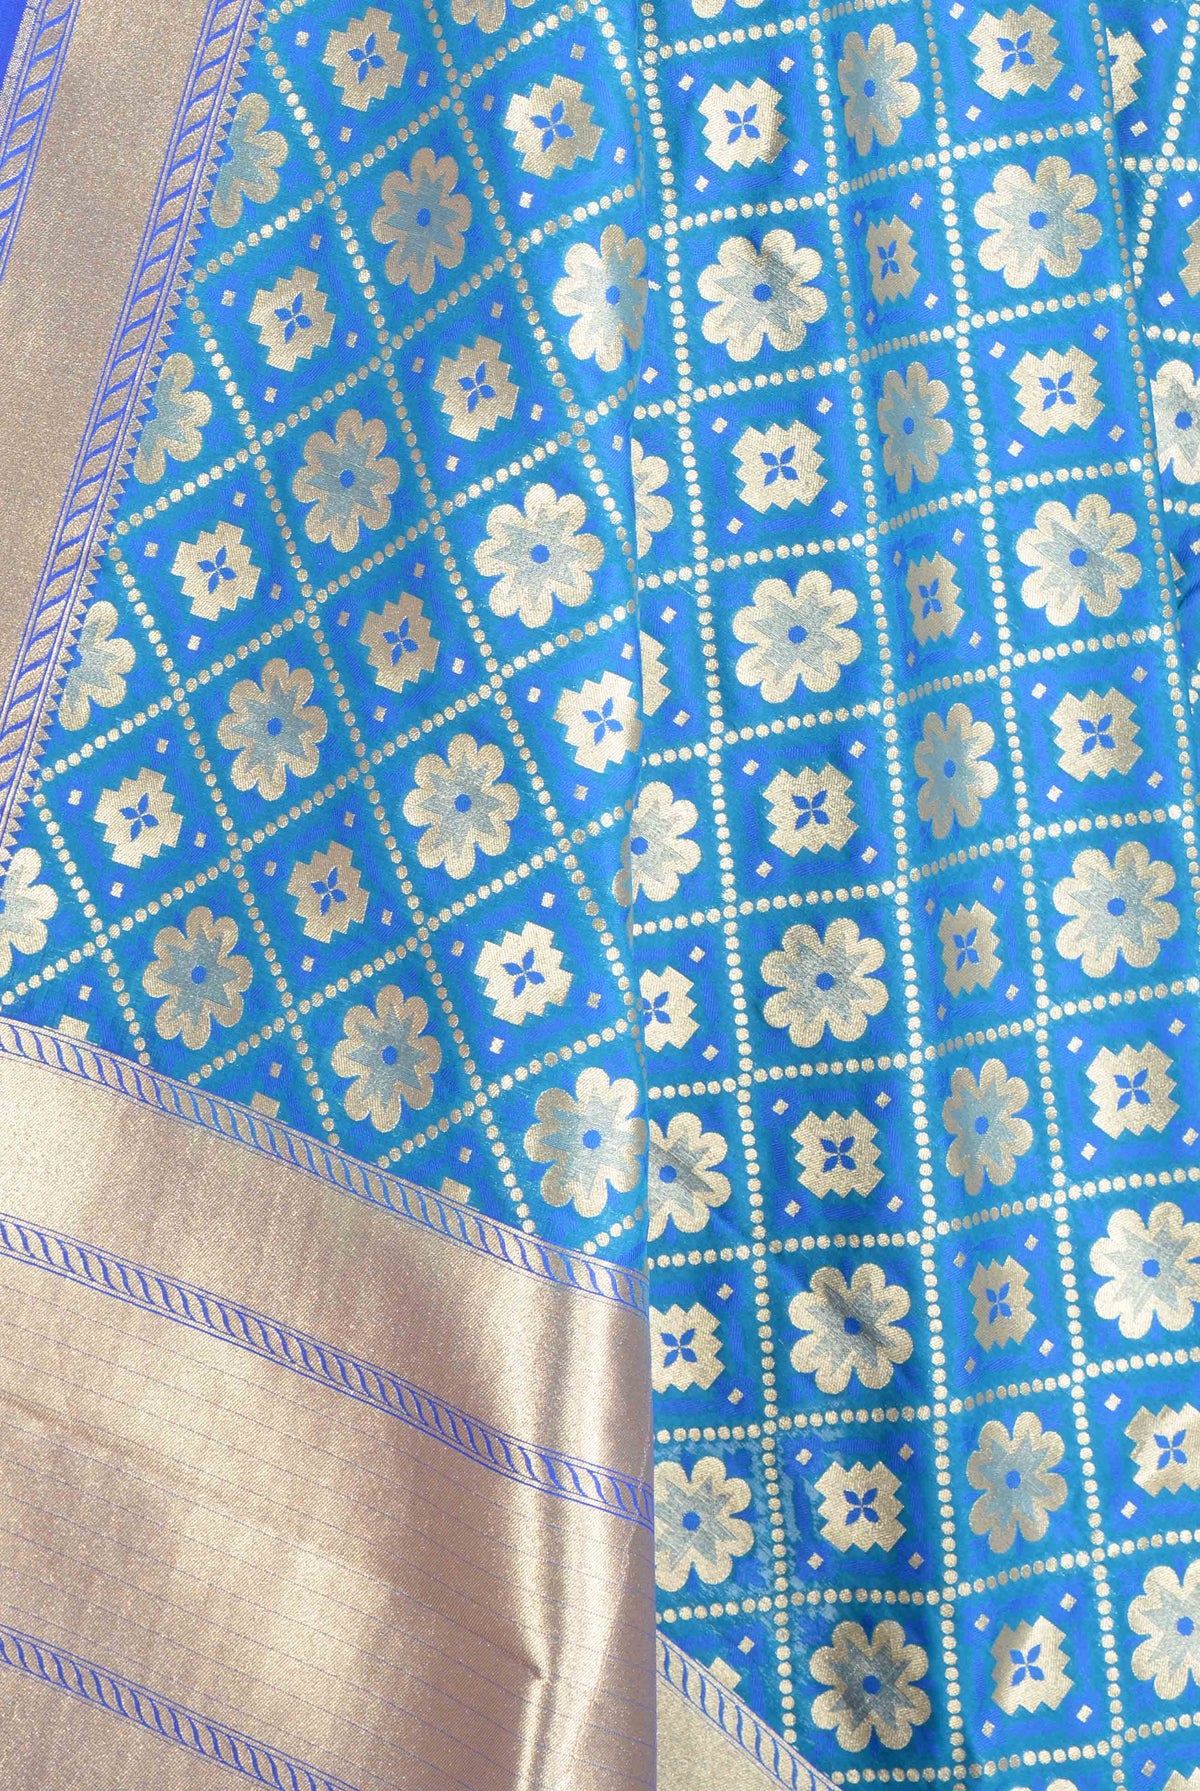 Sky Blue Banarasi dupatta with floral and plus motifs (2) Close up